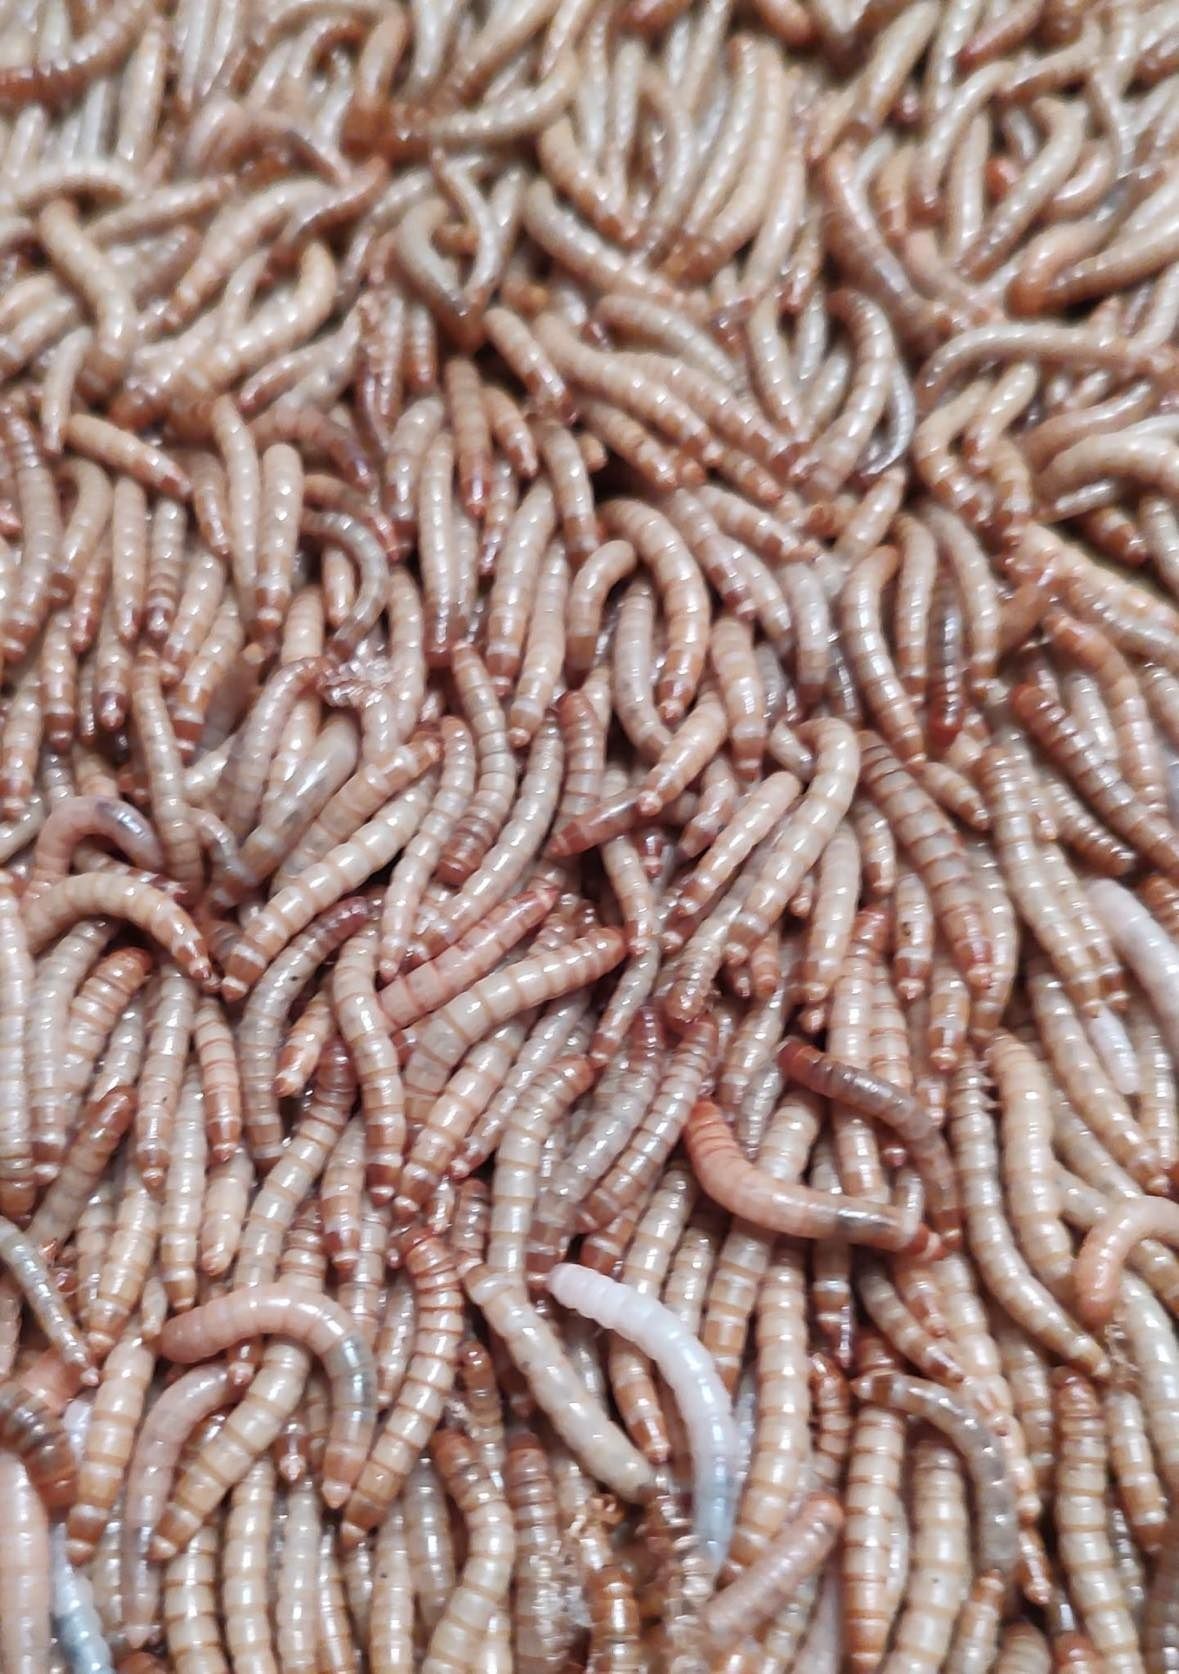 Żywe larwy mącznika młynarka